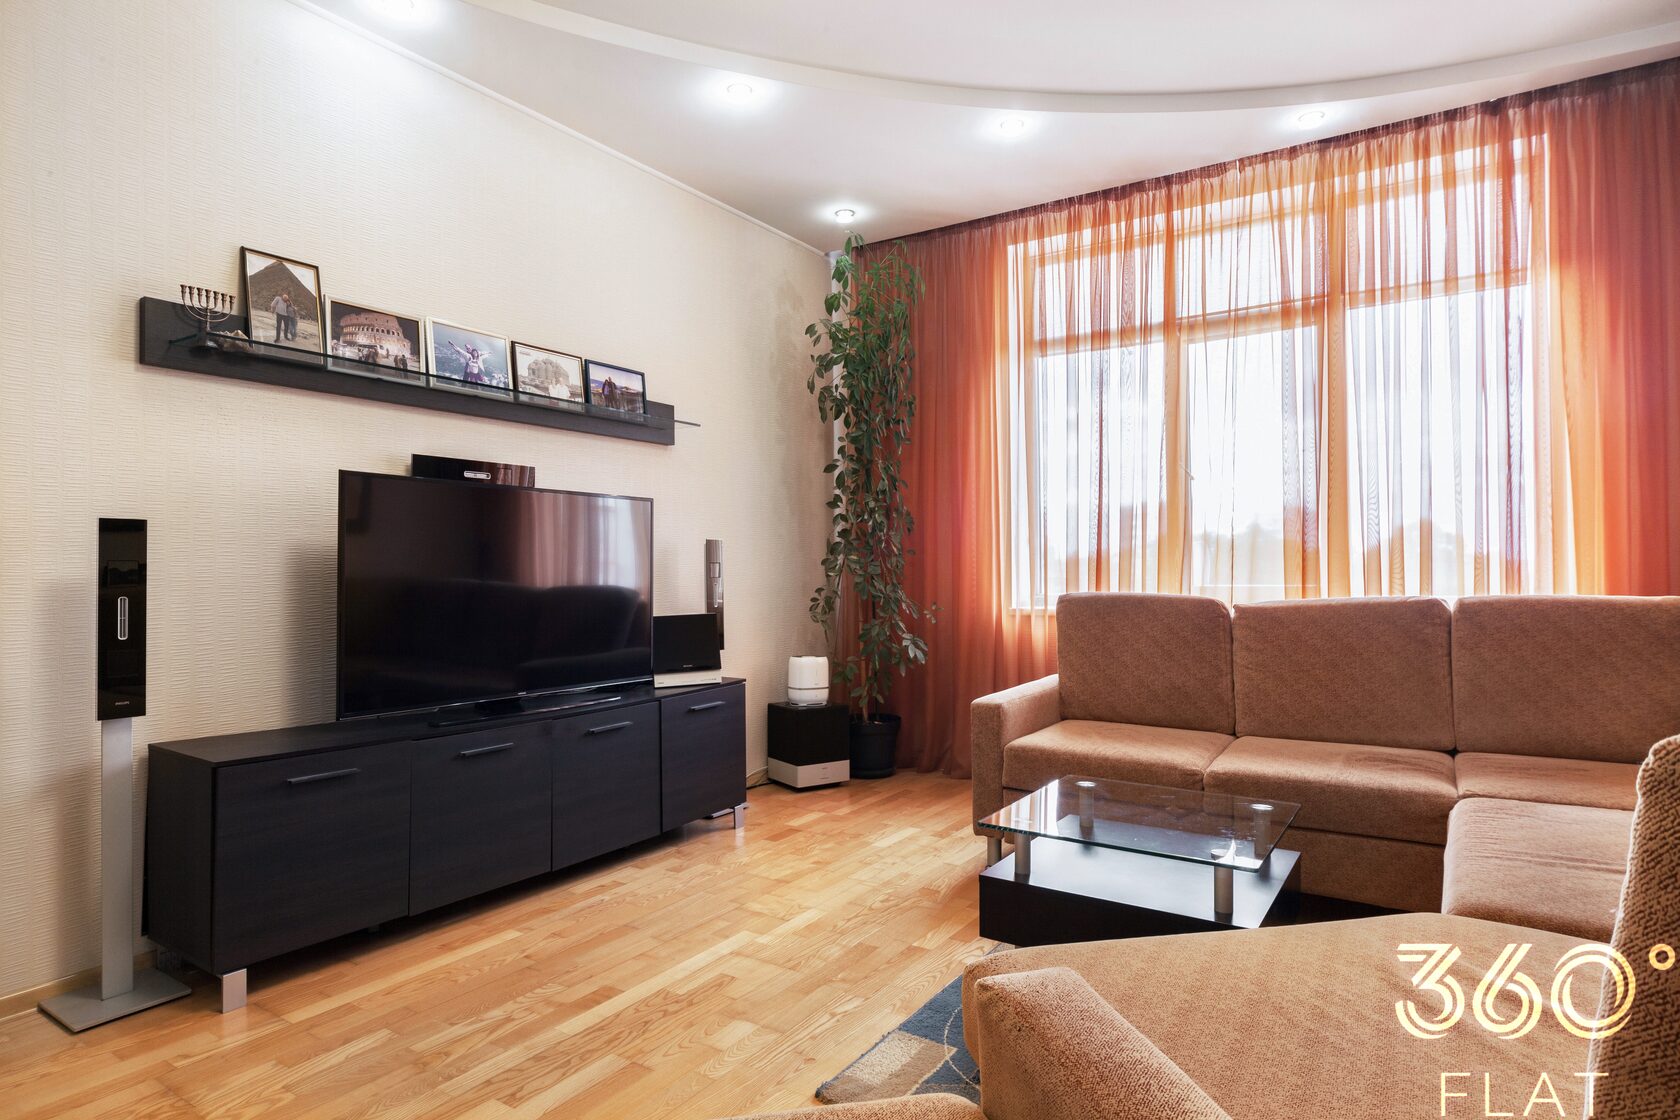 Купить квартиру в севастополе 1 комнатную вторичку. В Севастополе однокомнатную квартиру около 2000000 стоимостью вторичка. Купить 3ую квартиру Юмашева Севастополь.